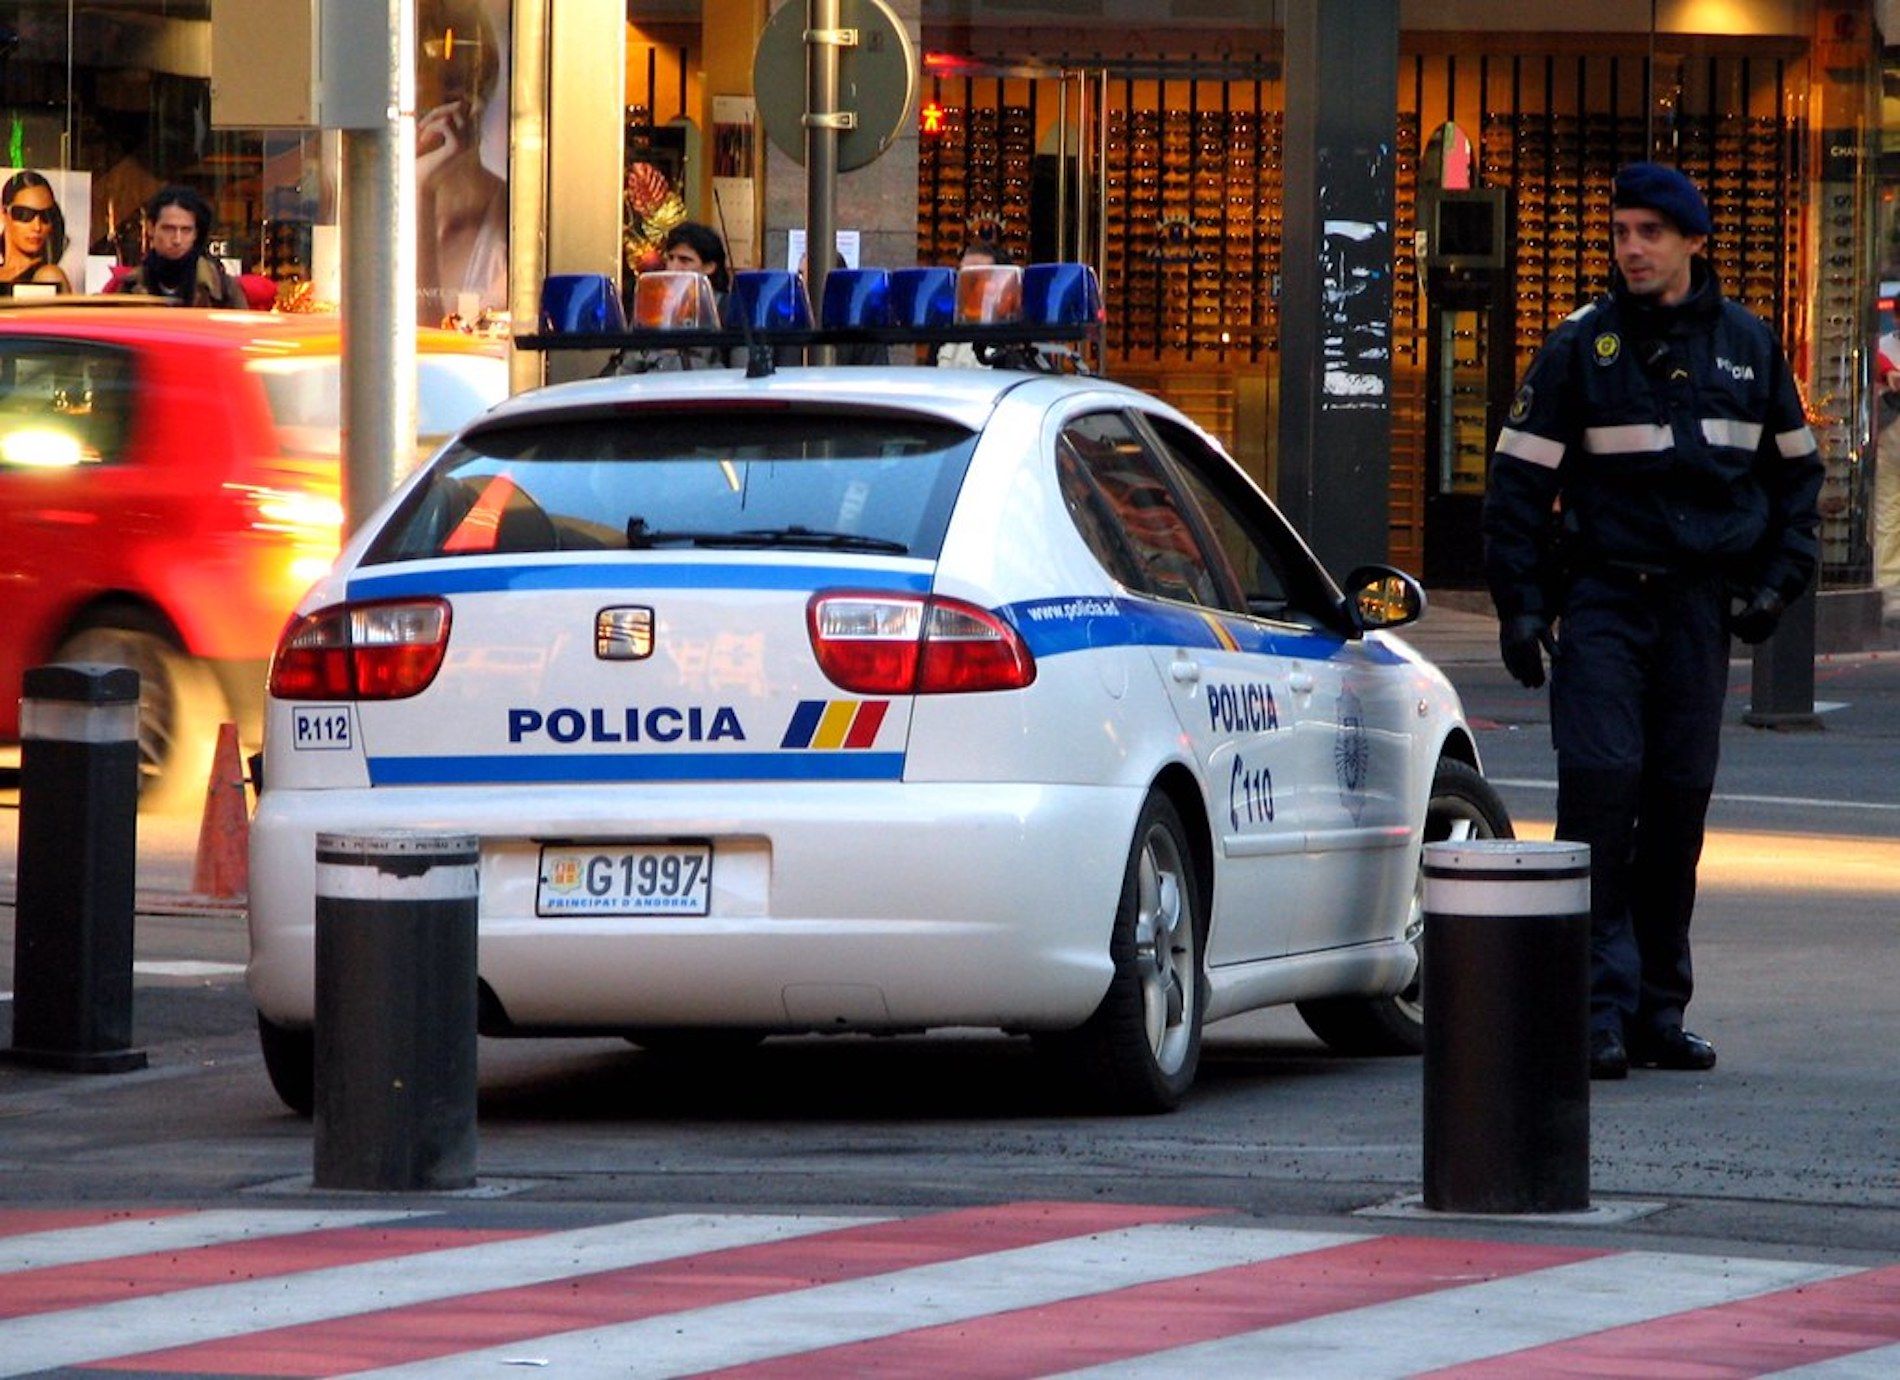 Policía Andorra / Flickr